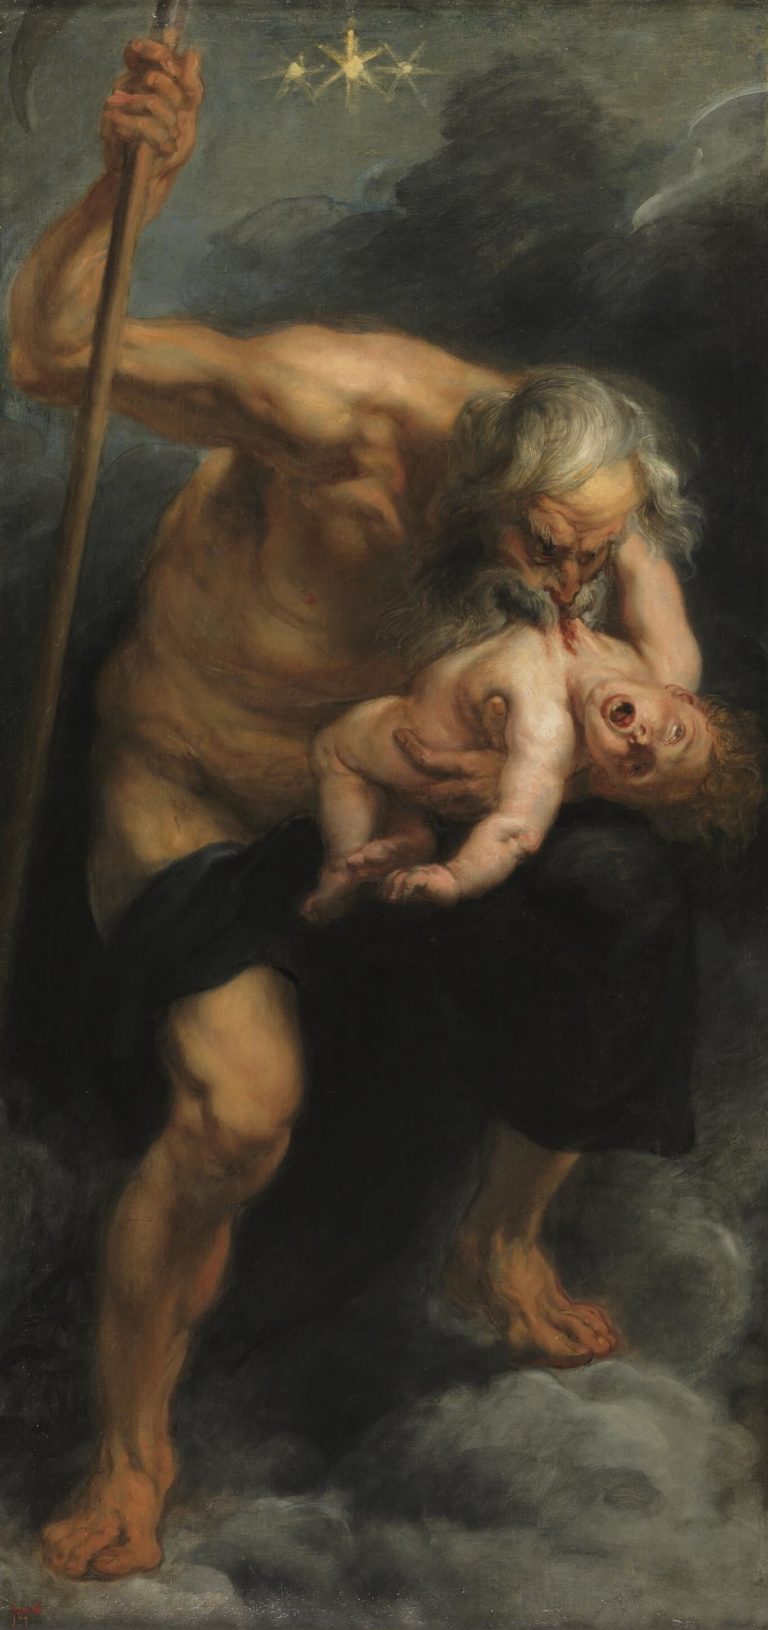 Les Sages d’Autrefois, Qui Valaient Bien Ceux-ci de Paul Verlaine dans Poèmes Saturniens - Peinture de Peter Paul Rubens - Saturne - 1638